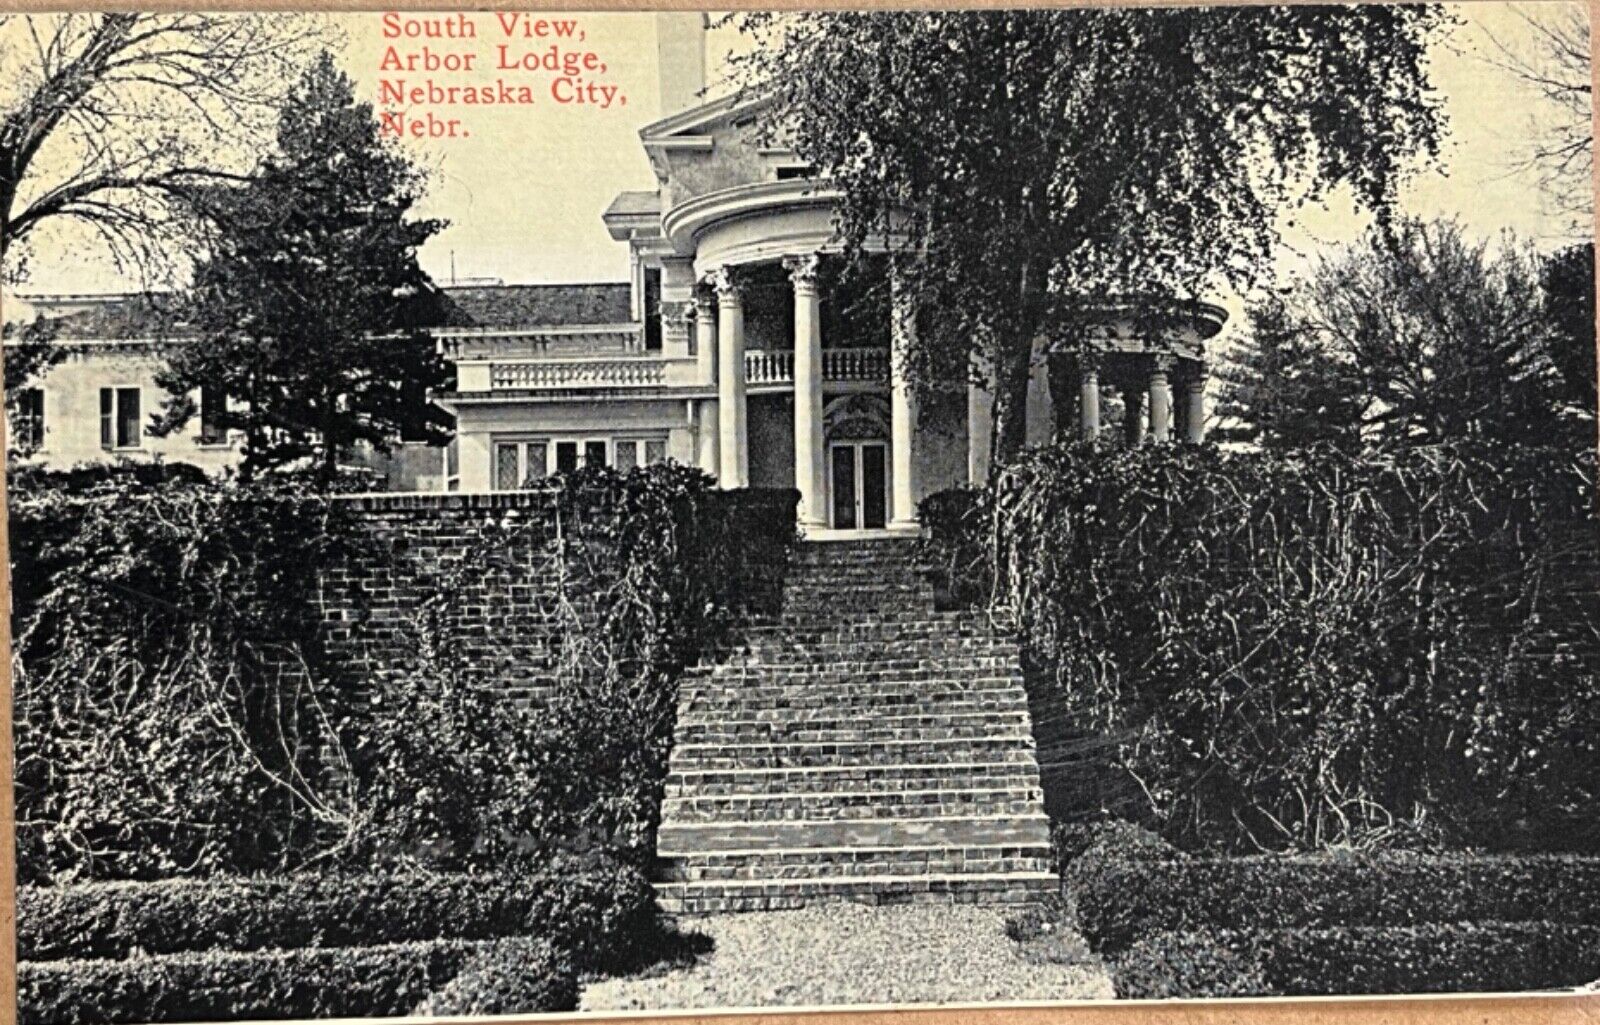 Nebraska City Arbor Lodge South View Entrance Antique Postcard c1910